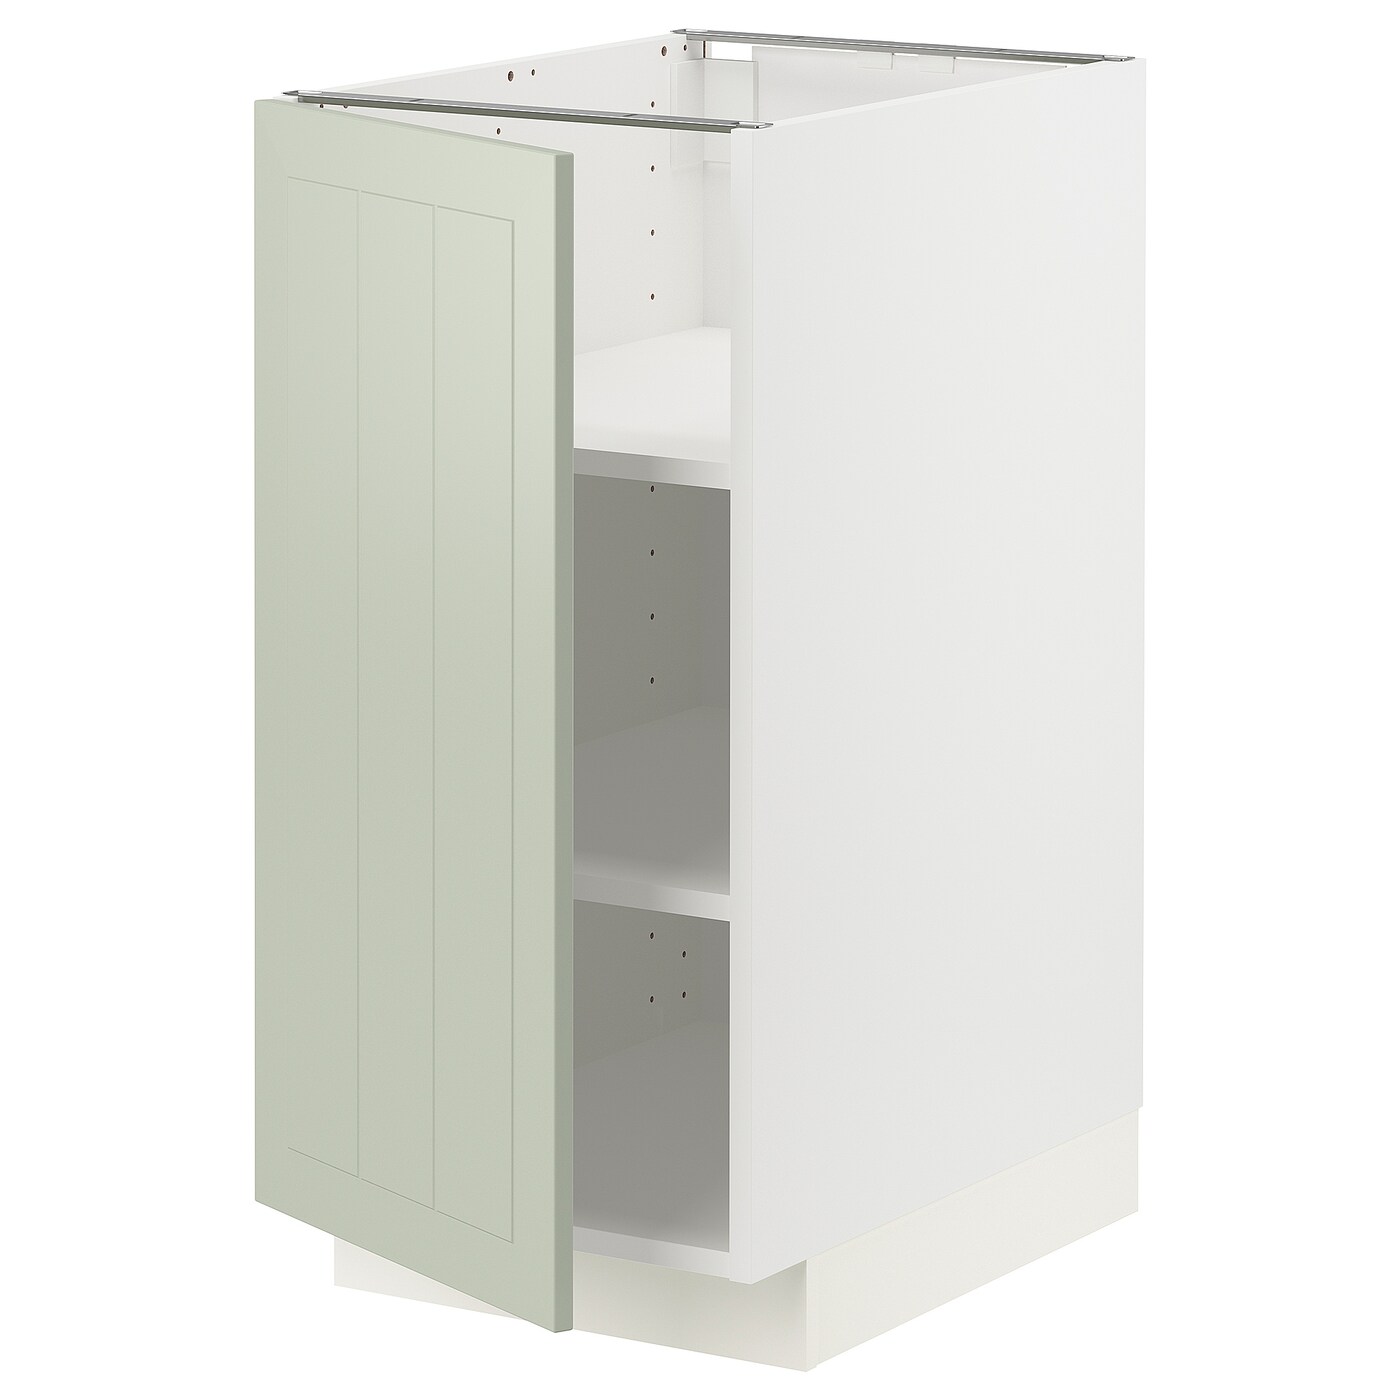 Напольный шкаф - IKEA METOD, 88x62x40см, белый/светло-зеленый, МЕТОД ИКЕА